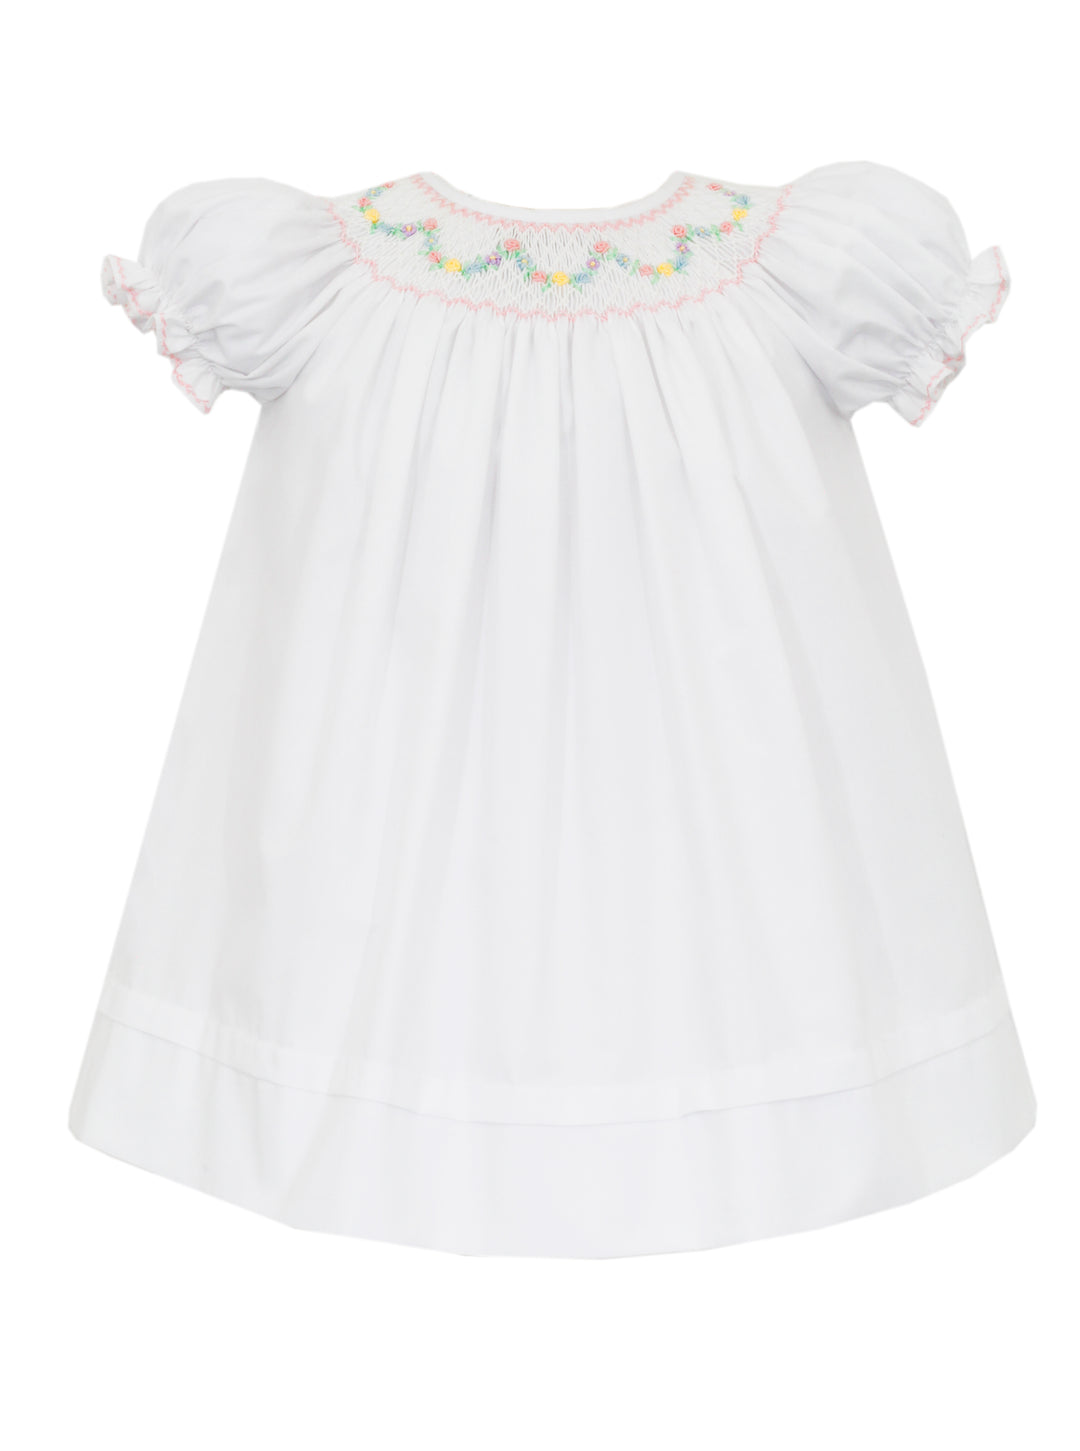 Diana White Poplin Bishop Dress with Pastel Smocking